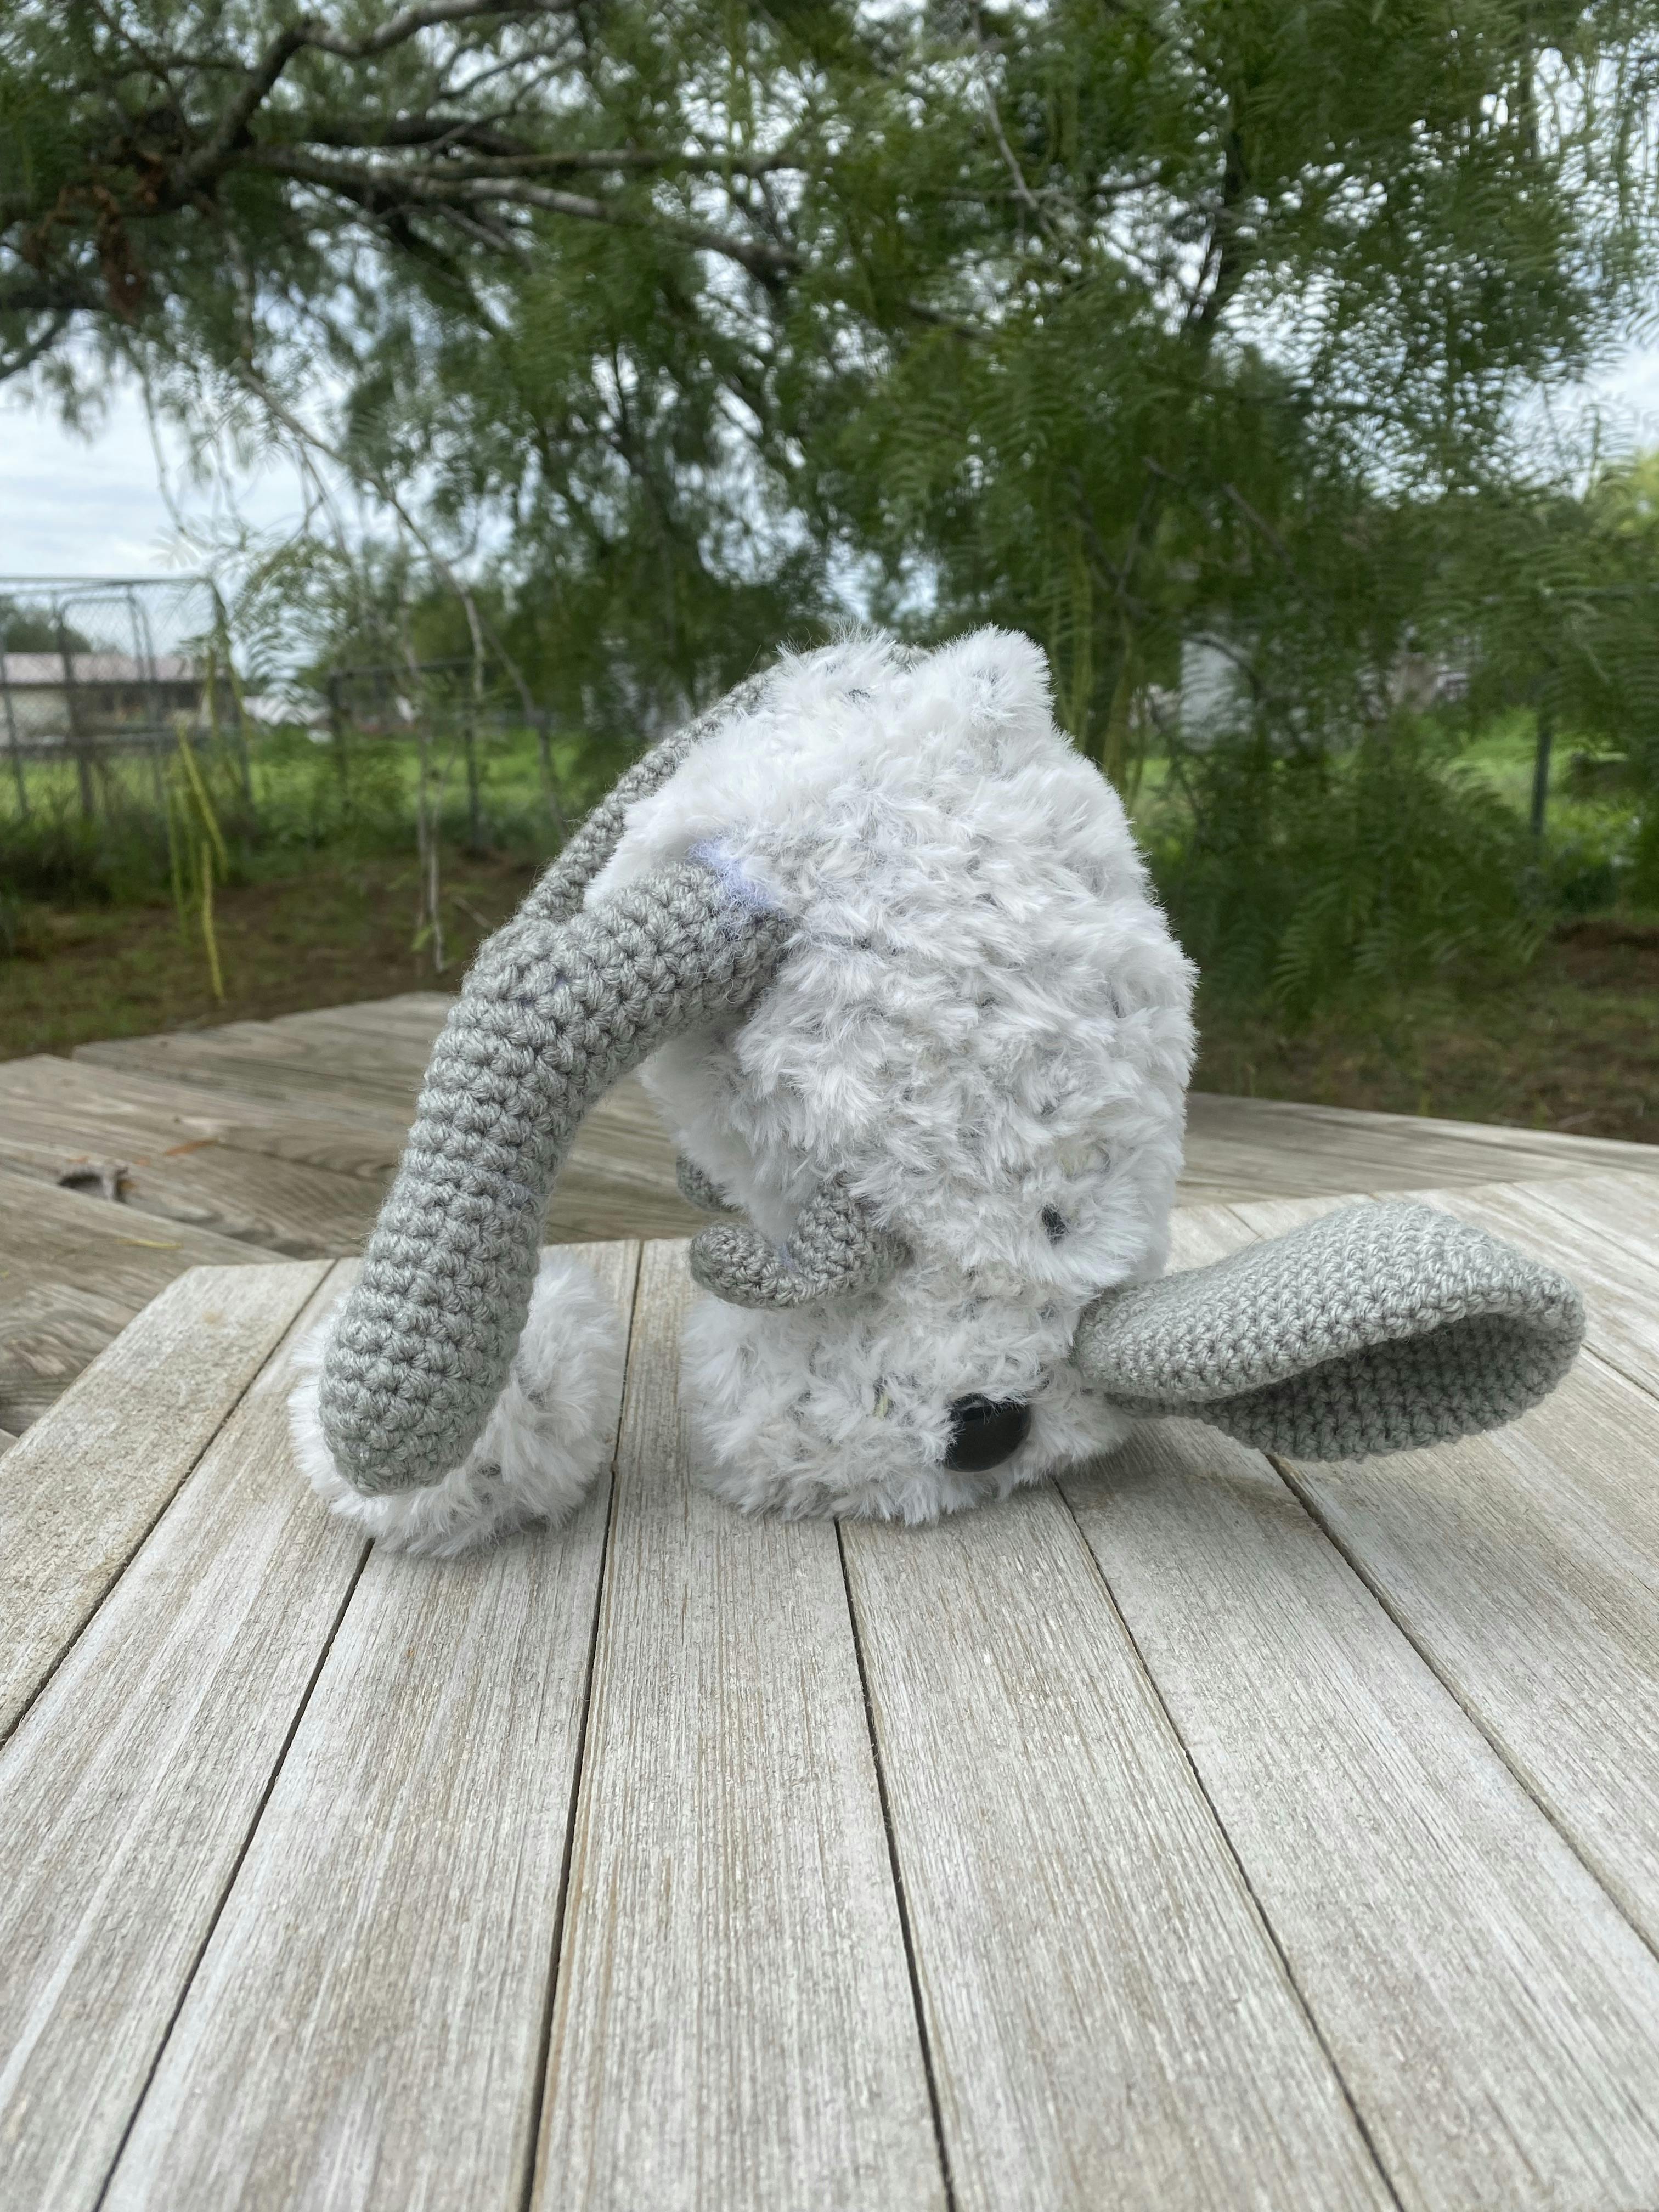 Fuzzy Crochet Jerboa